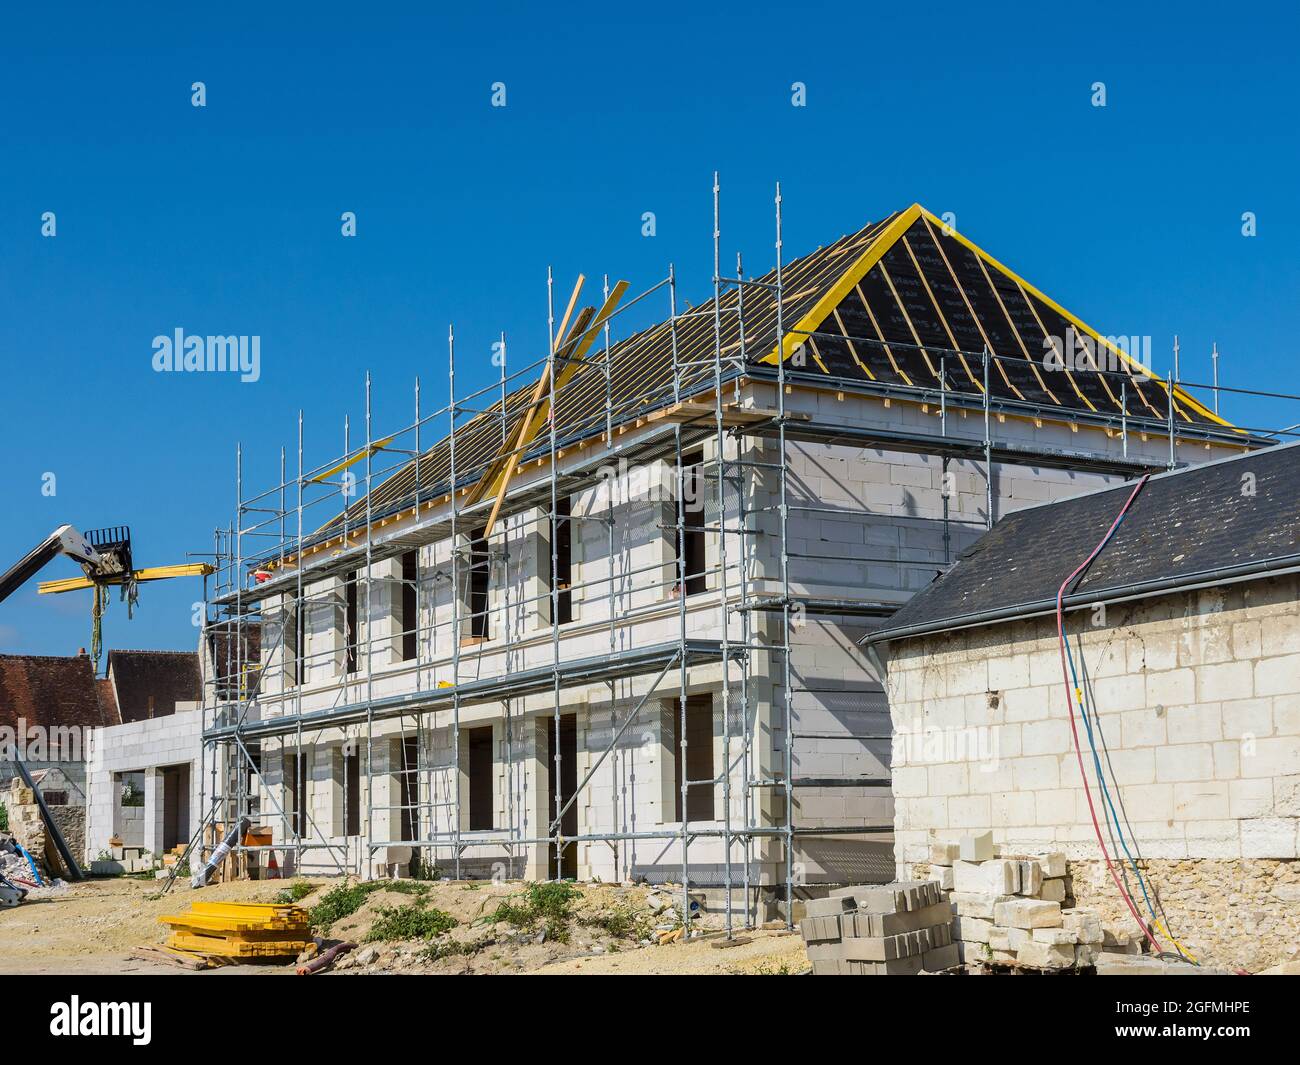 Nouveau bâtiment en construction - Loches, Indre-et-Loire (37), France. Banque D'Images